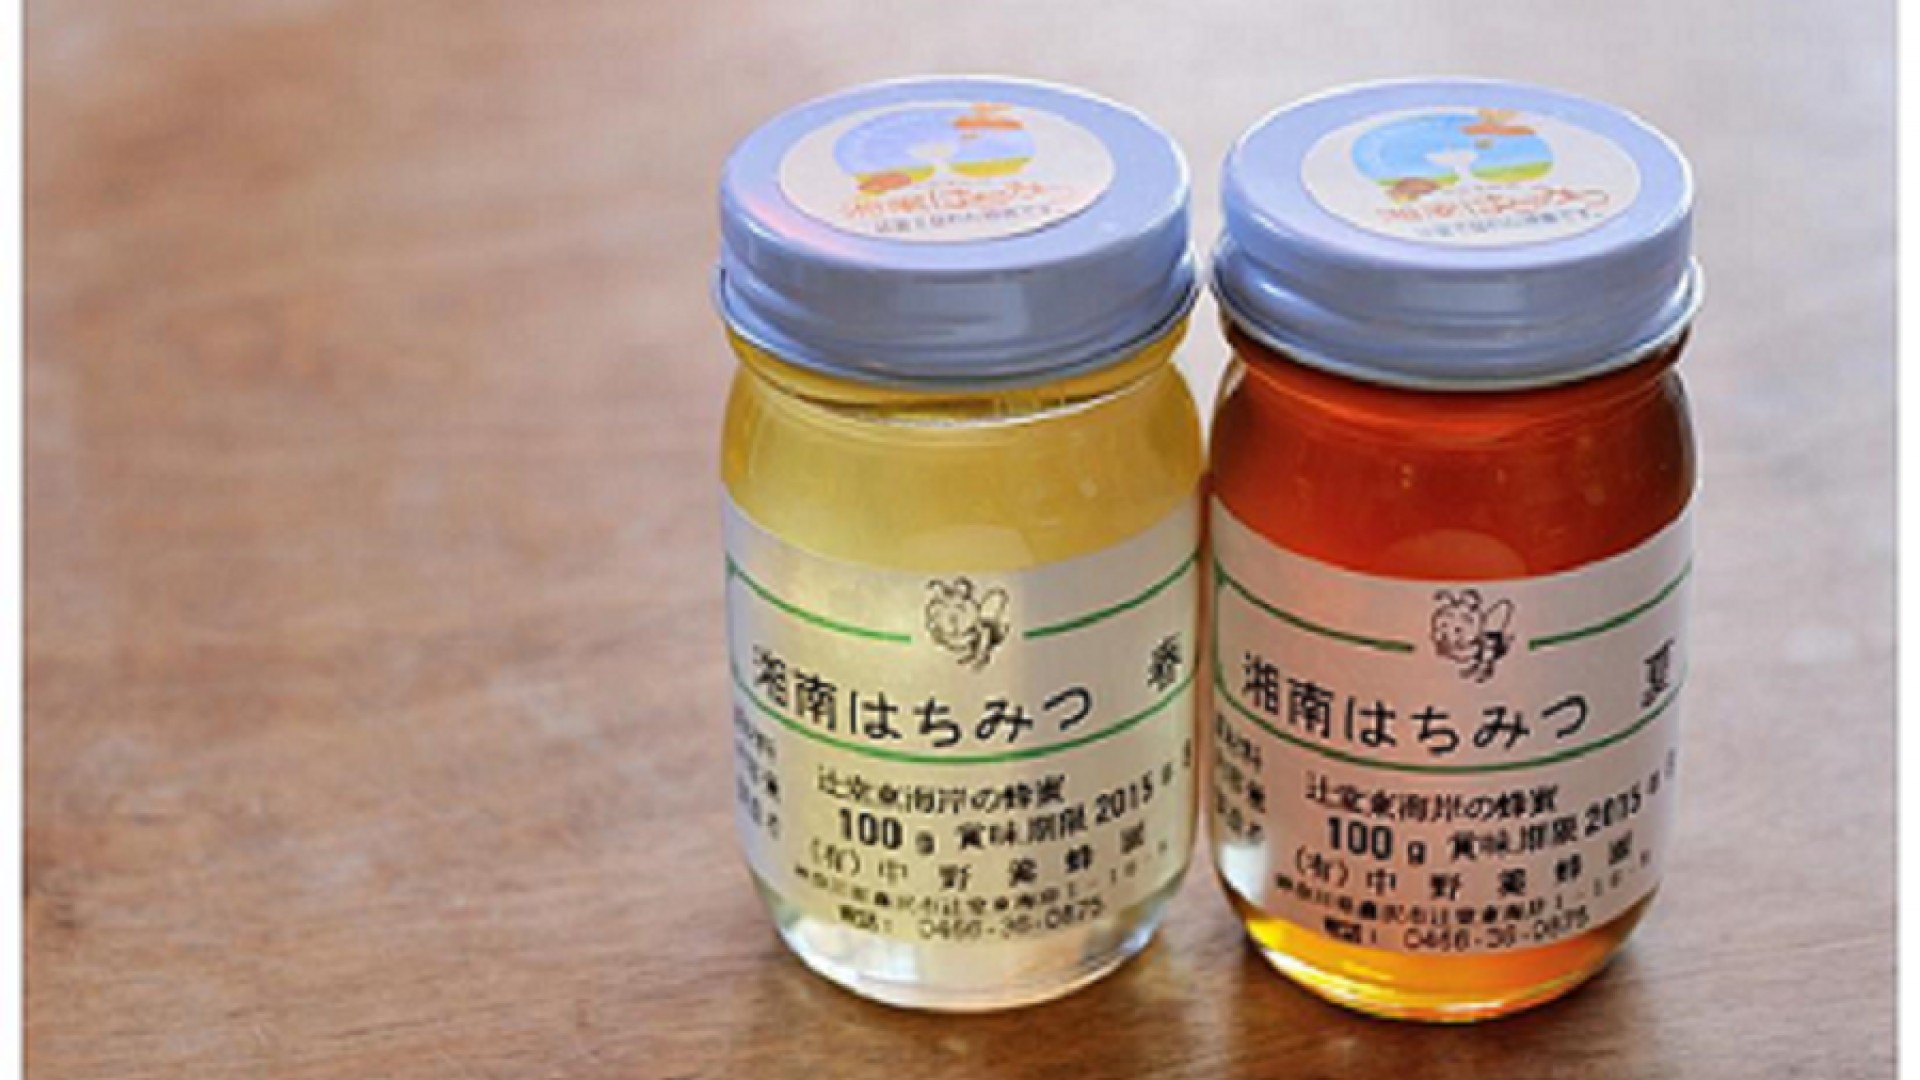 Nakano Honey Farm